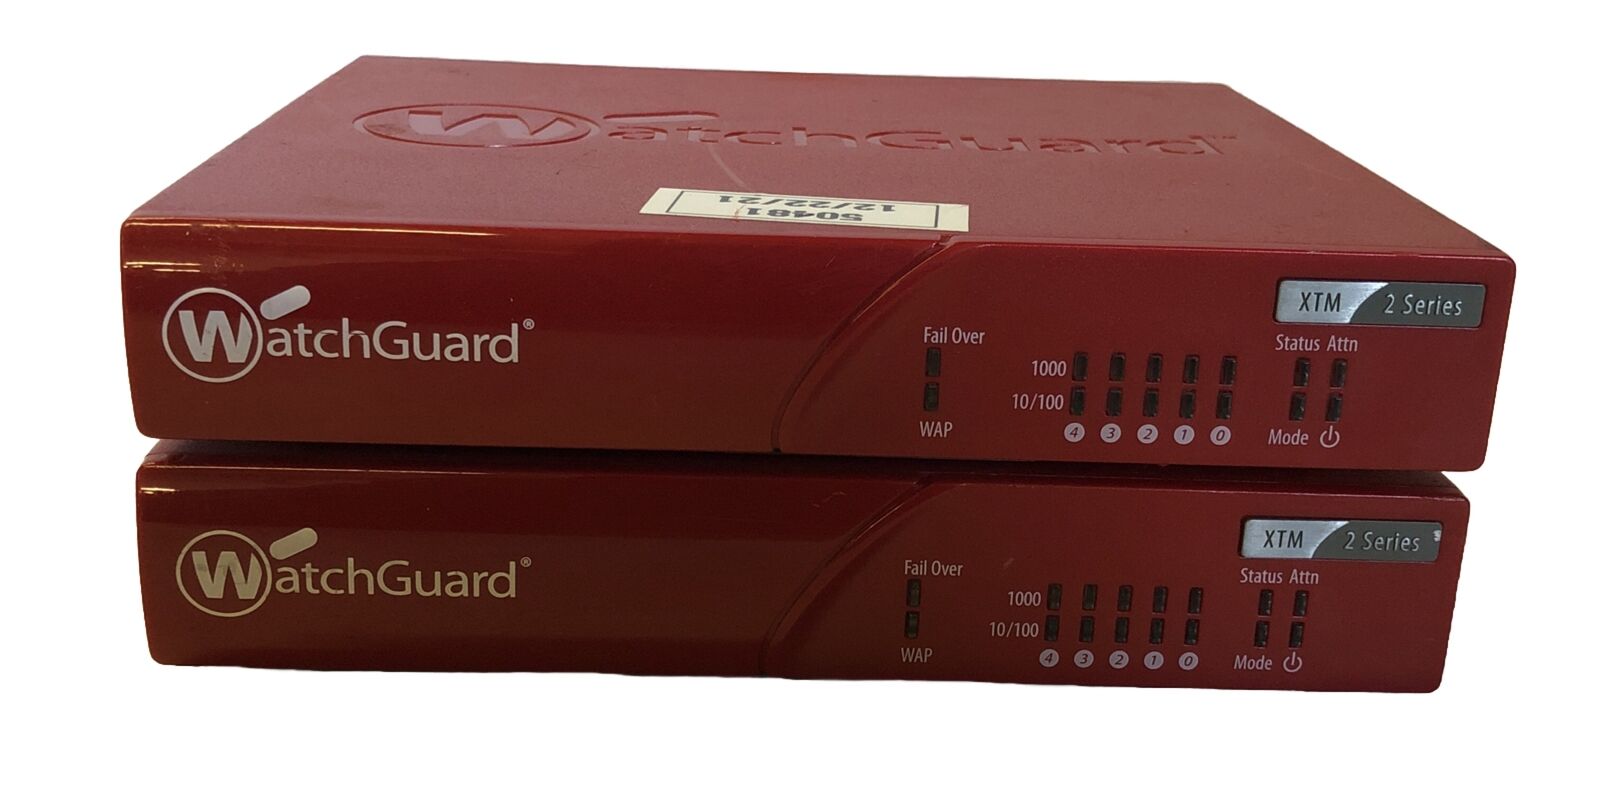 2x WatchGuard XTM 21 Series Gigabit Firebox Firewall Router without Power Supply